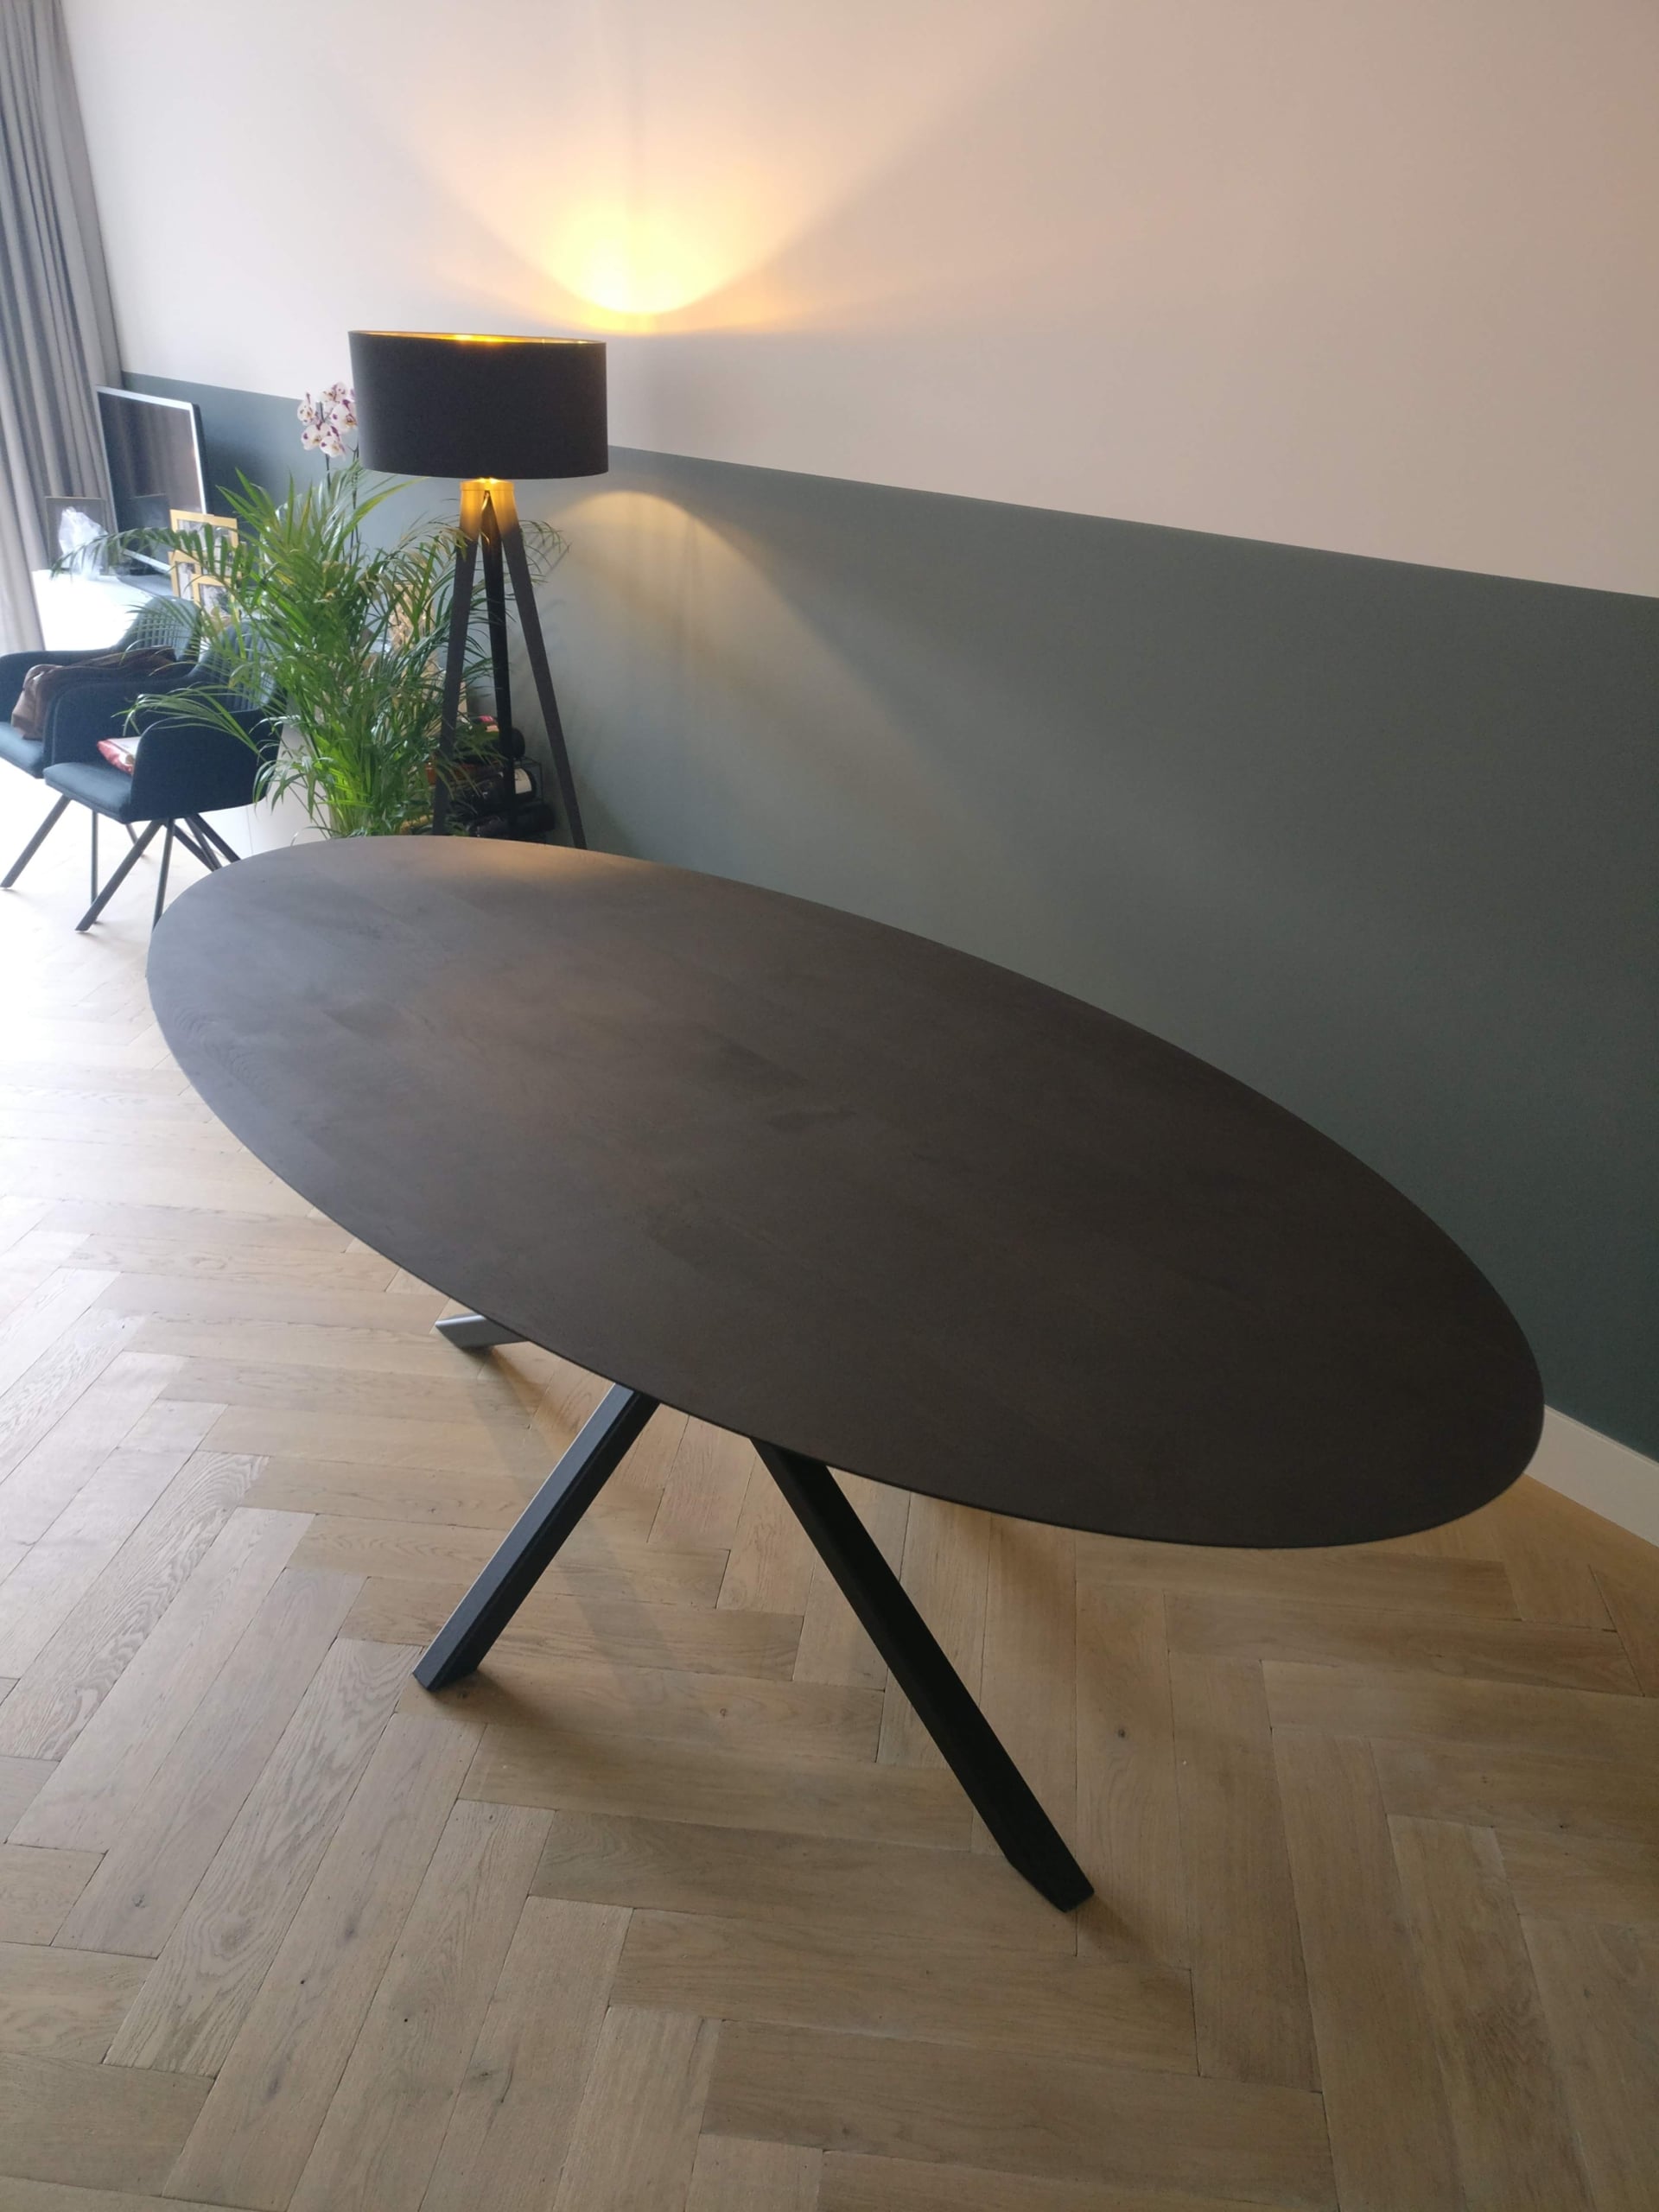 ovale tafel met schuine rand in het zwart